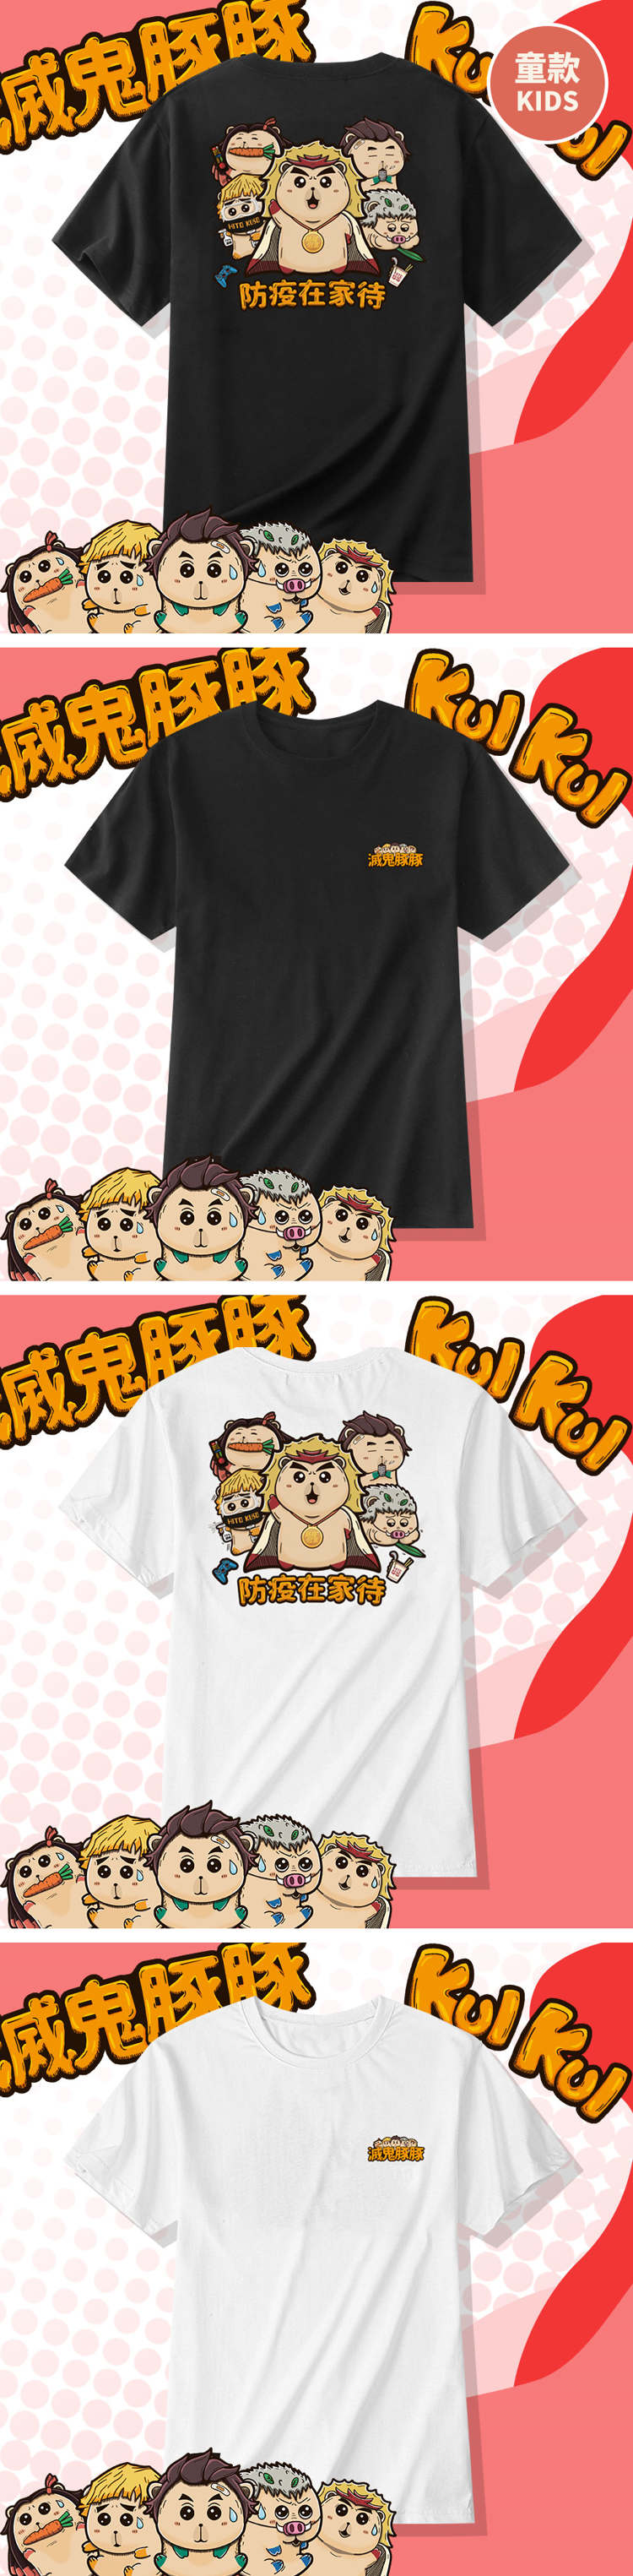 【童】KUSO豚豚一家 宅家防疫創意短袖T恤